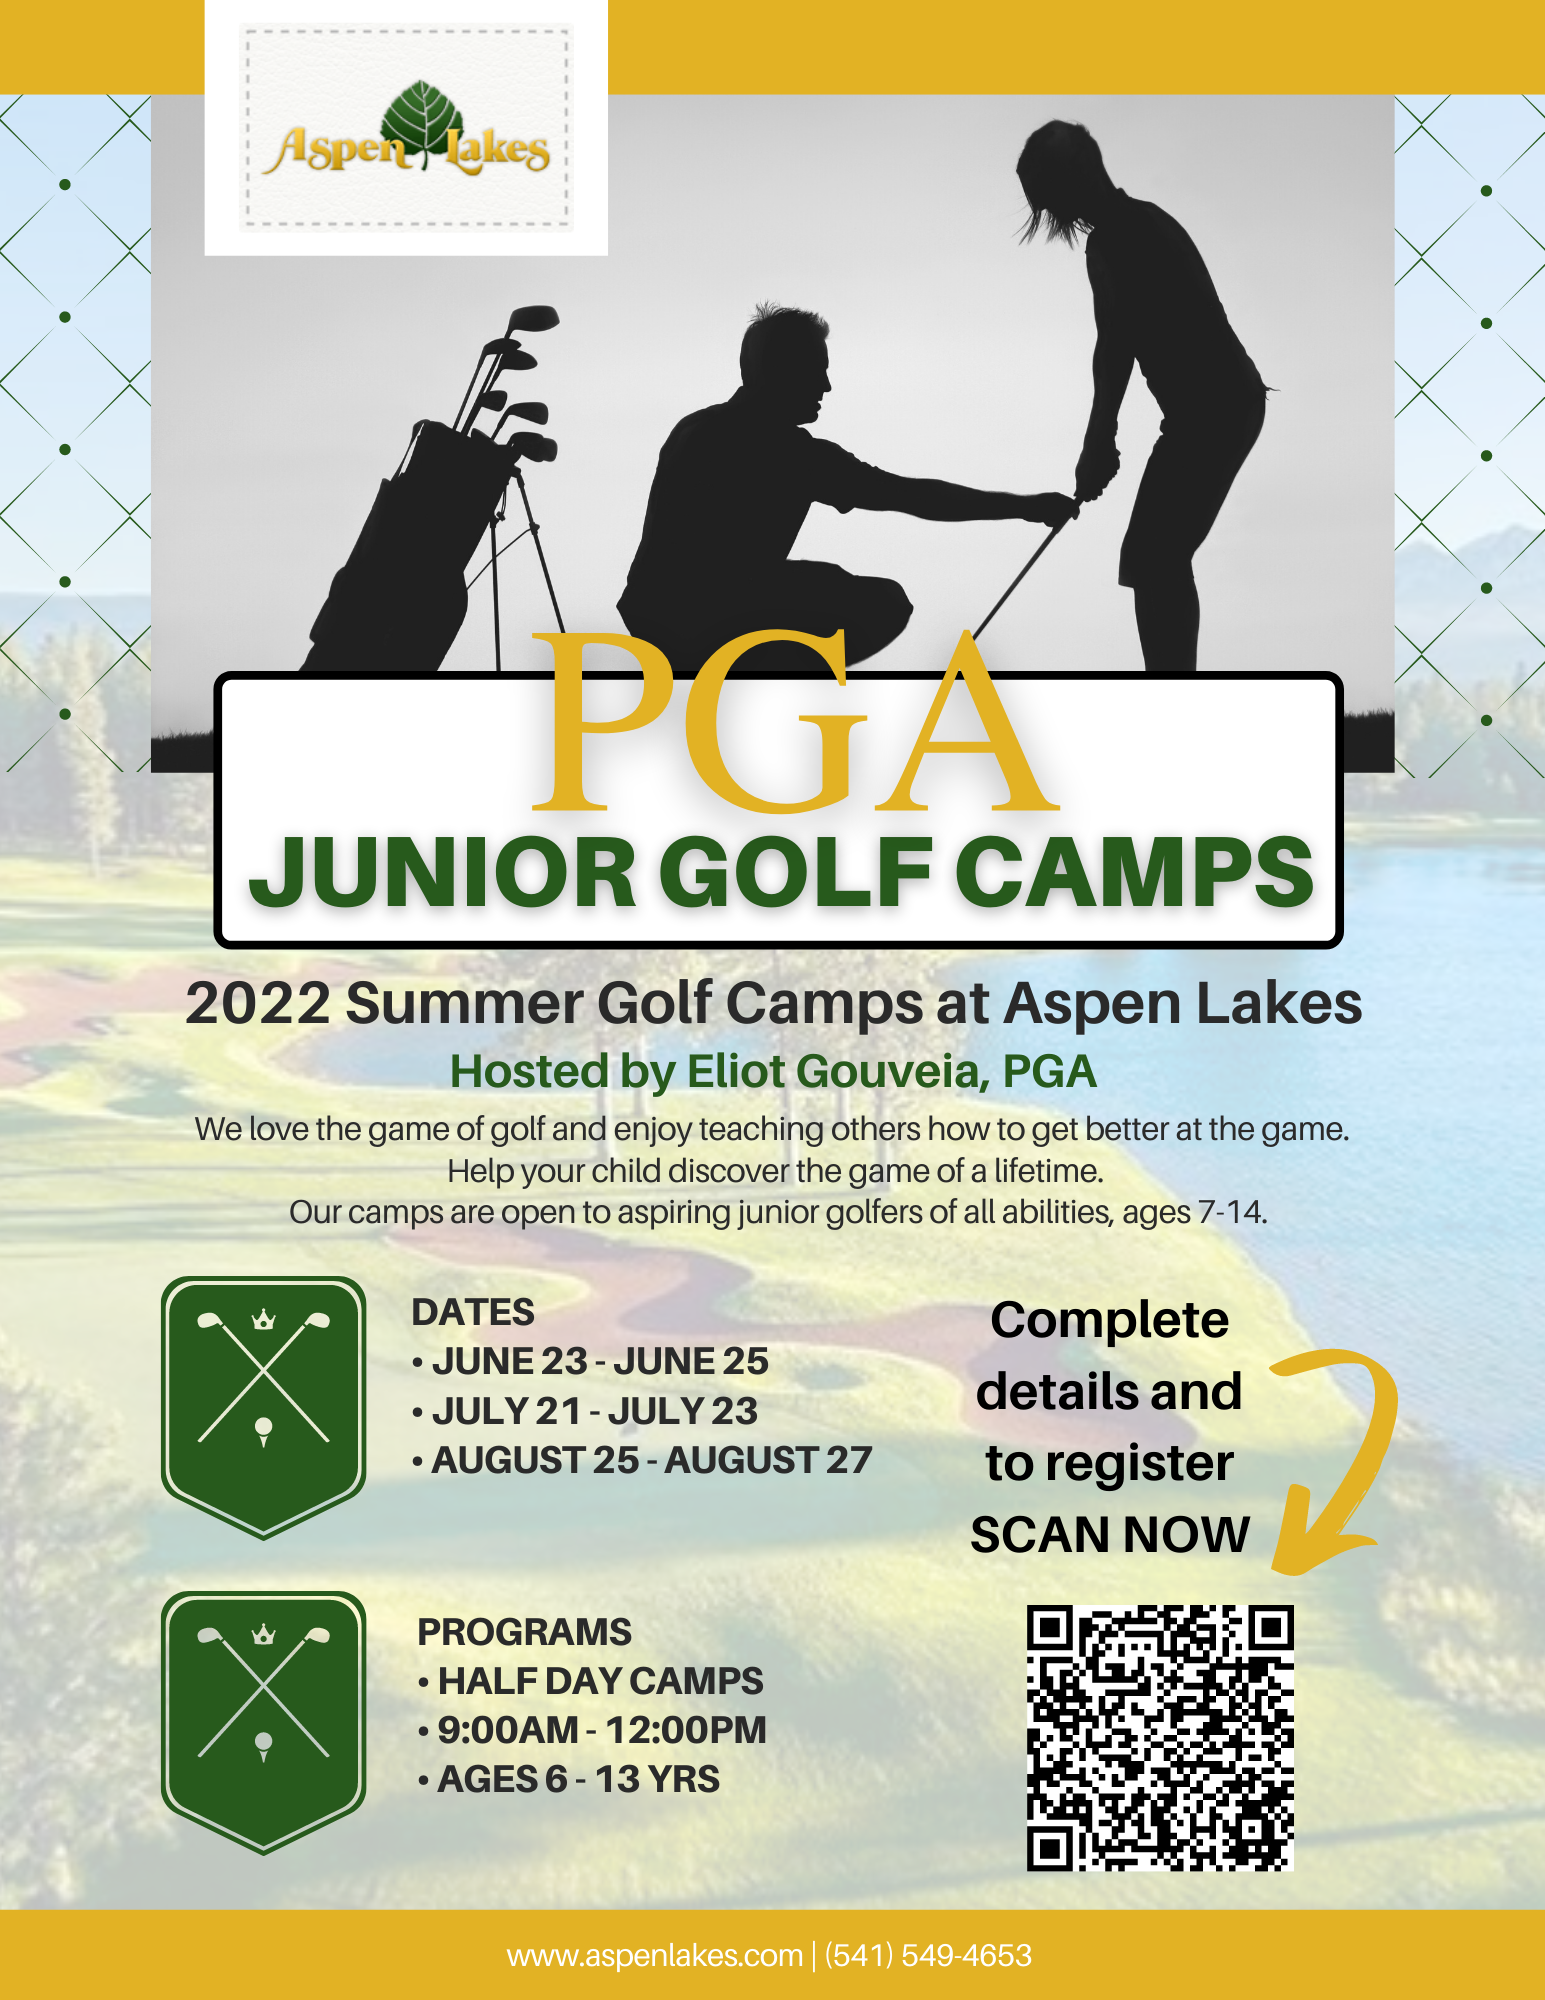 Aspen Lakes PGA Jr. Camps email